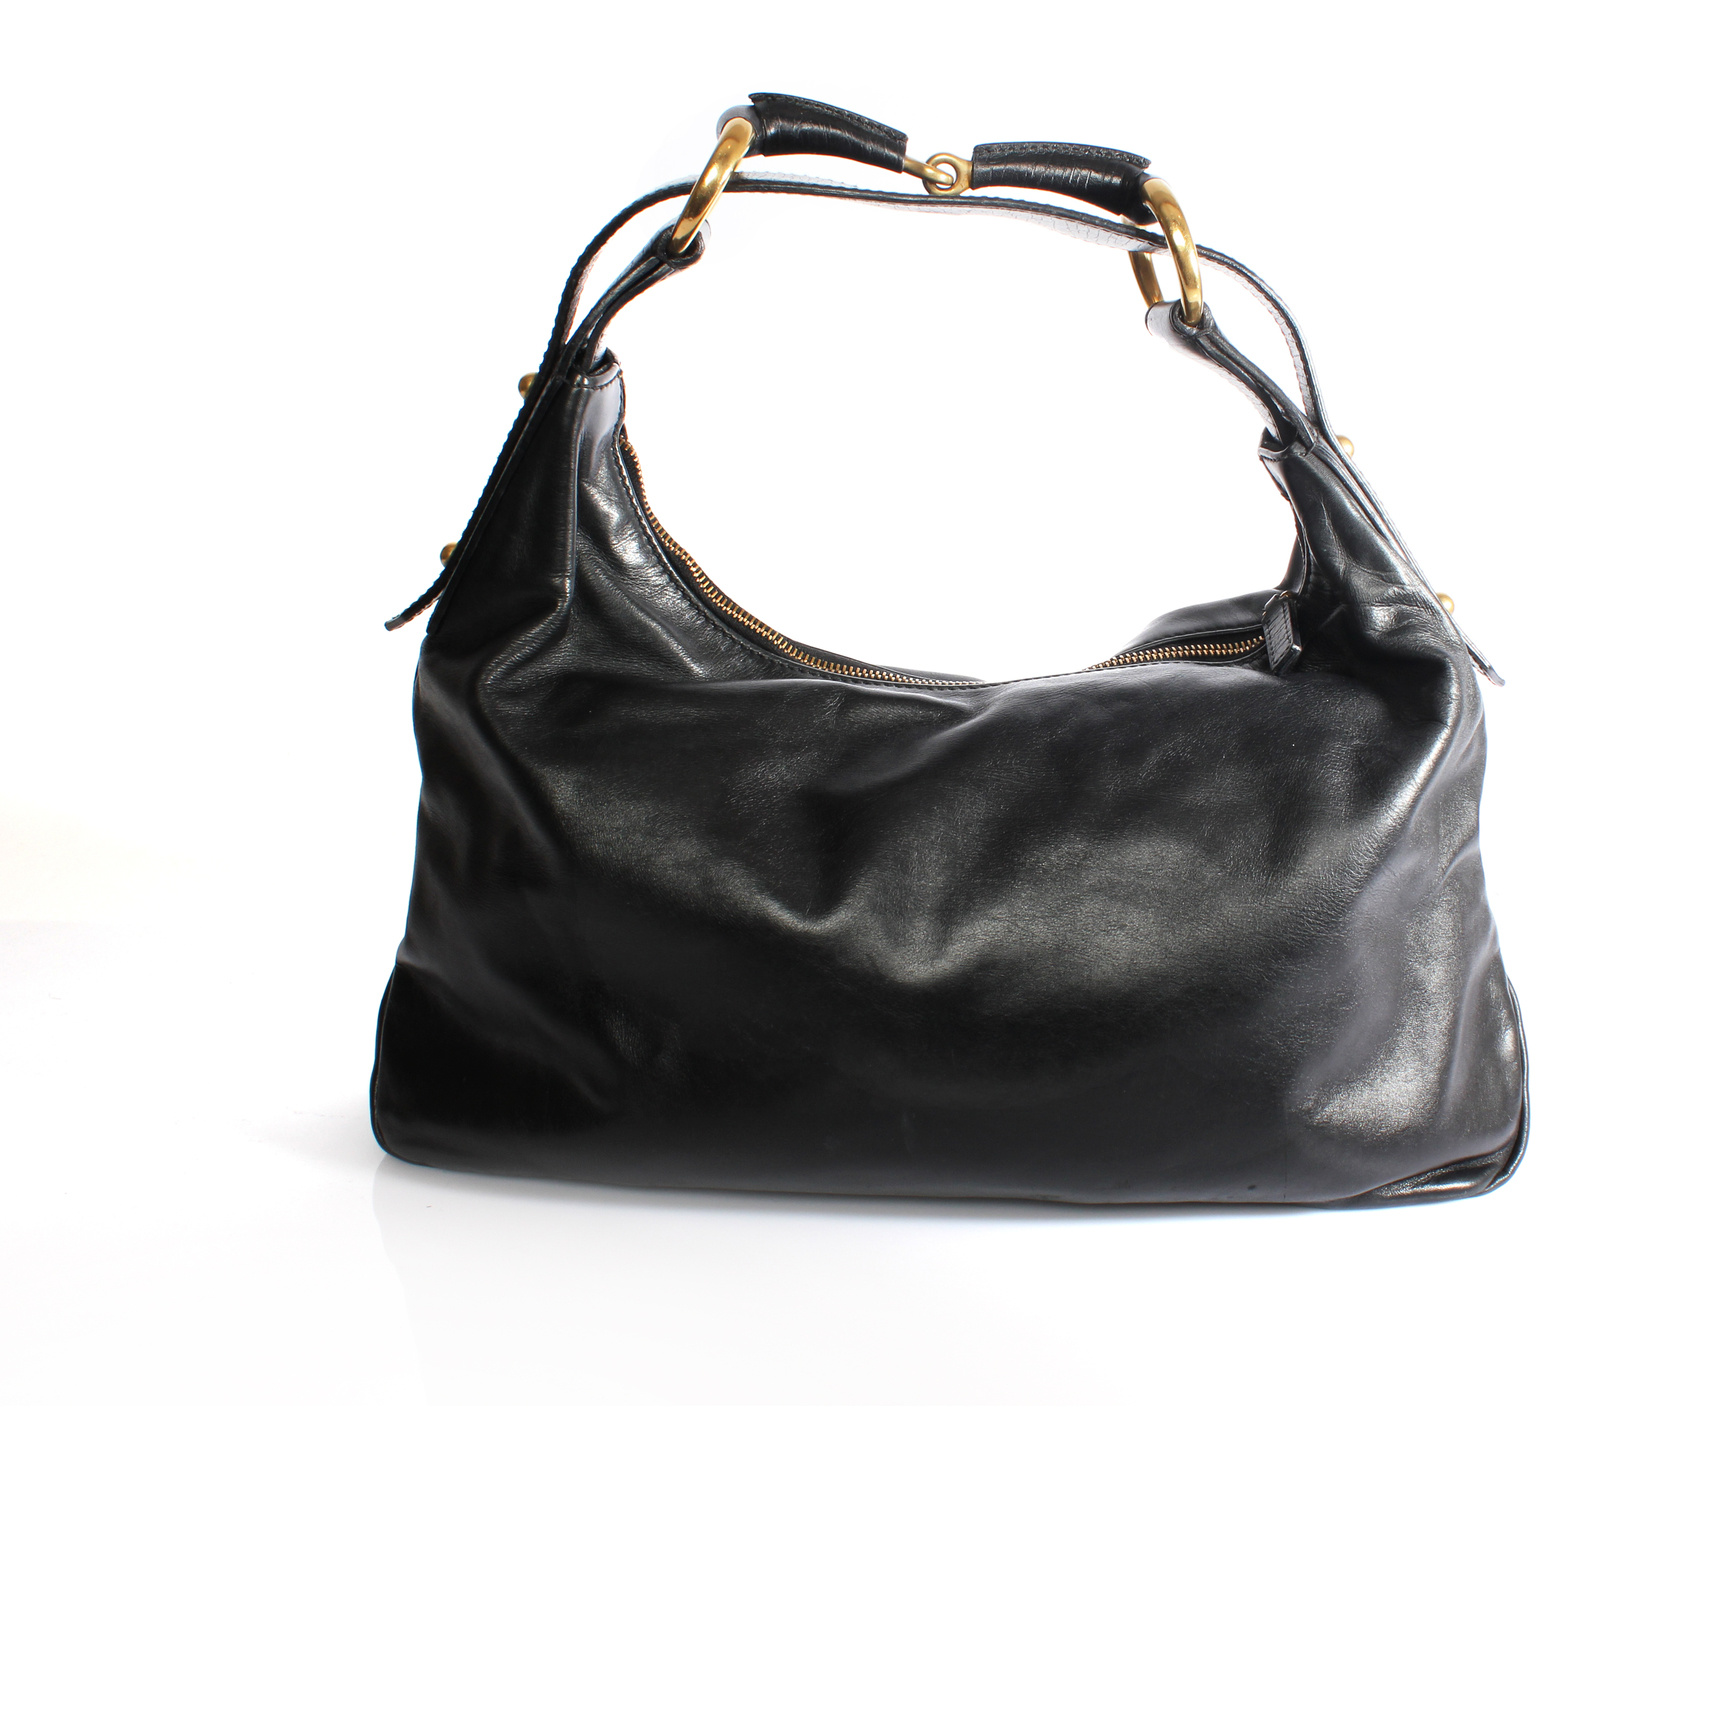 At Auction: Gucci, Gucci Italian Designer Black Canvas Hobo Bag Purse